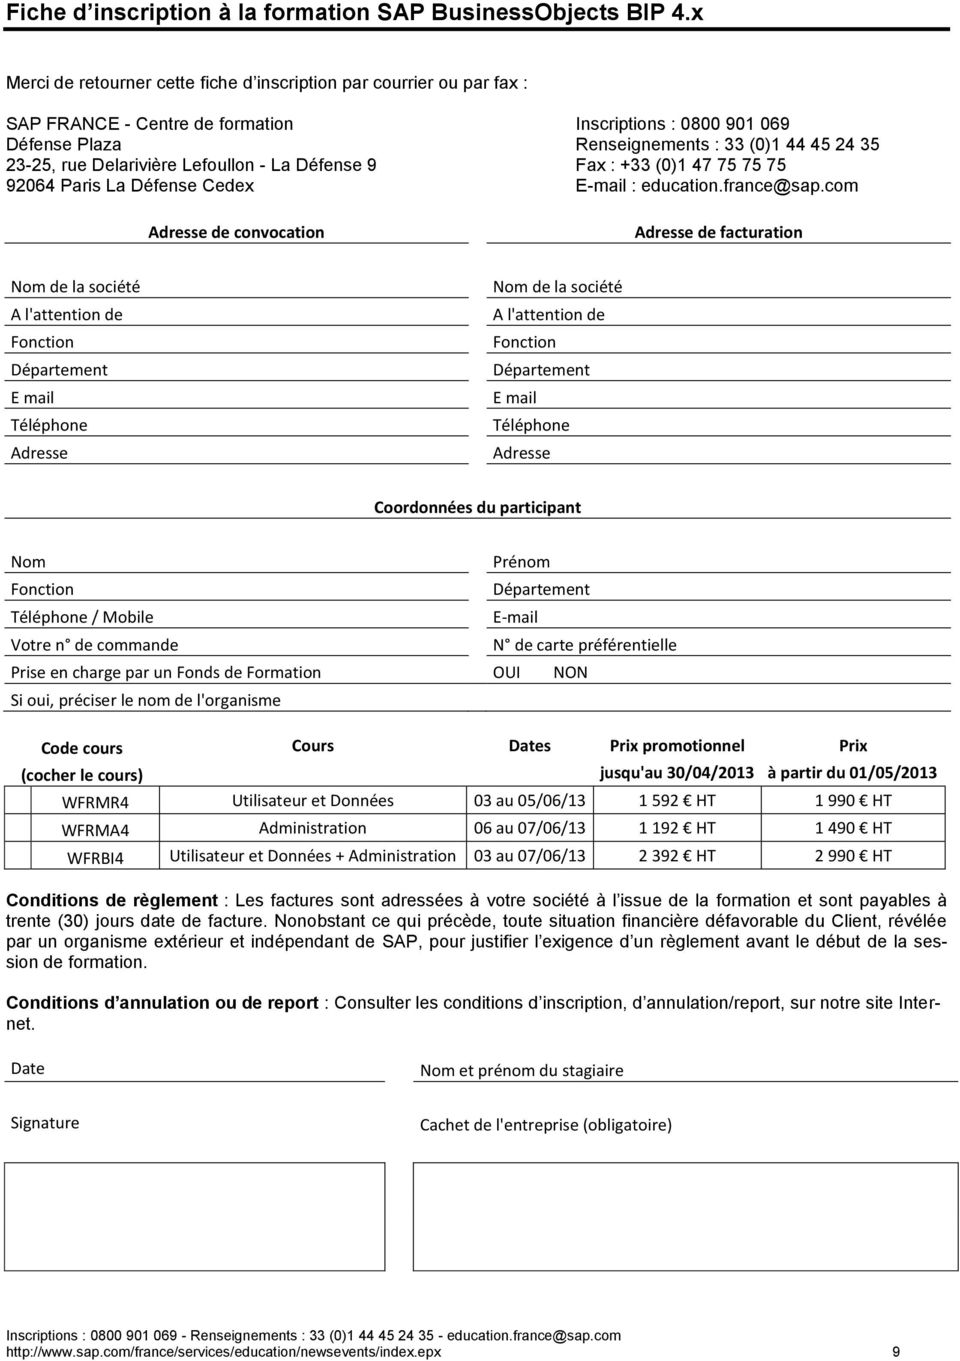 Delarivière Lefoullon - La Défense 9 Fax : +33 (0)1 47 75 75 75 92064 Paris La Défense Cedex E-mail : education.france@sap.